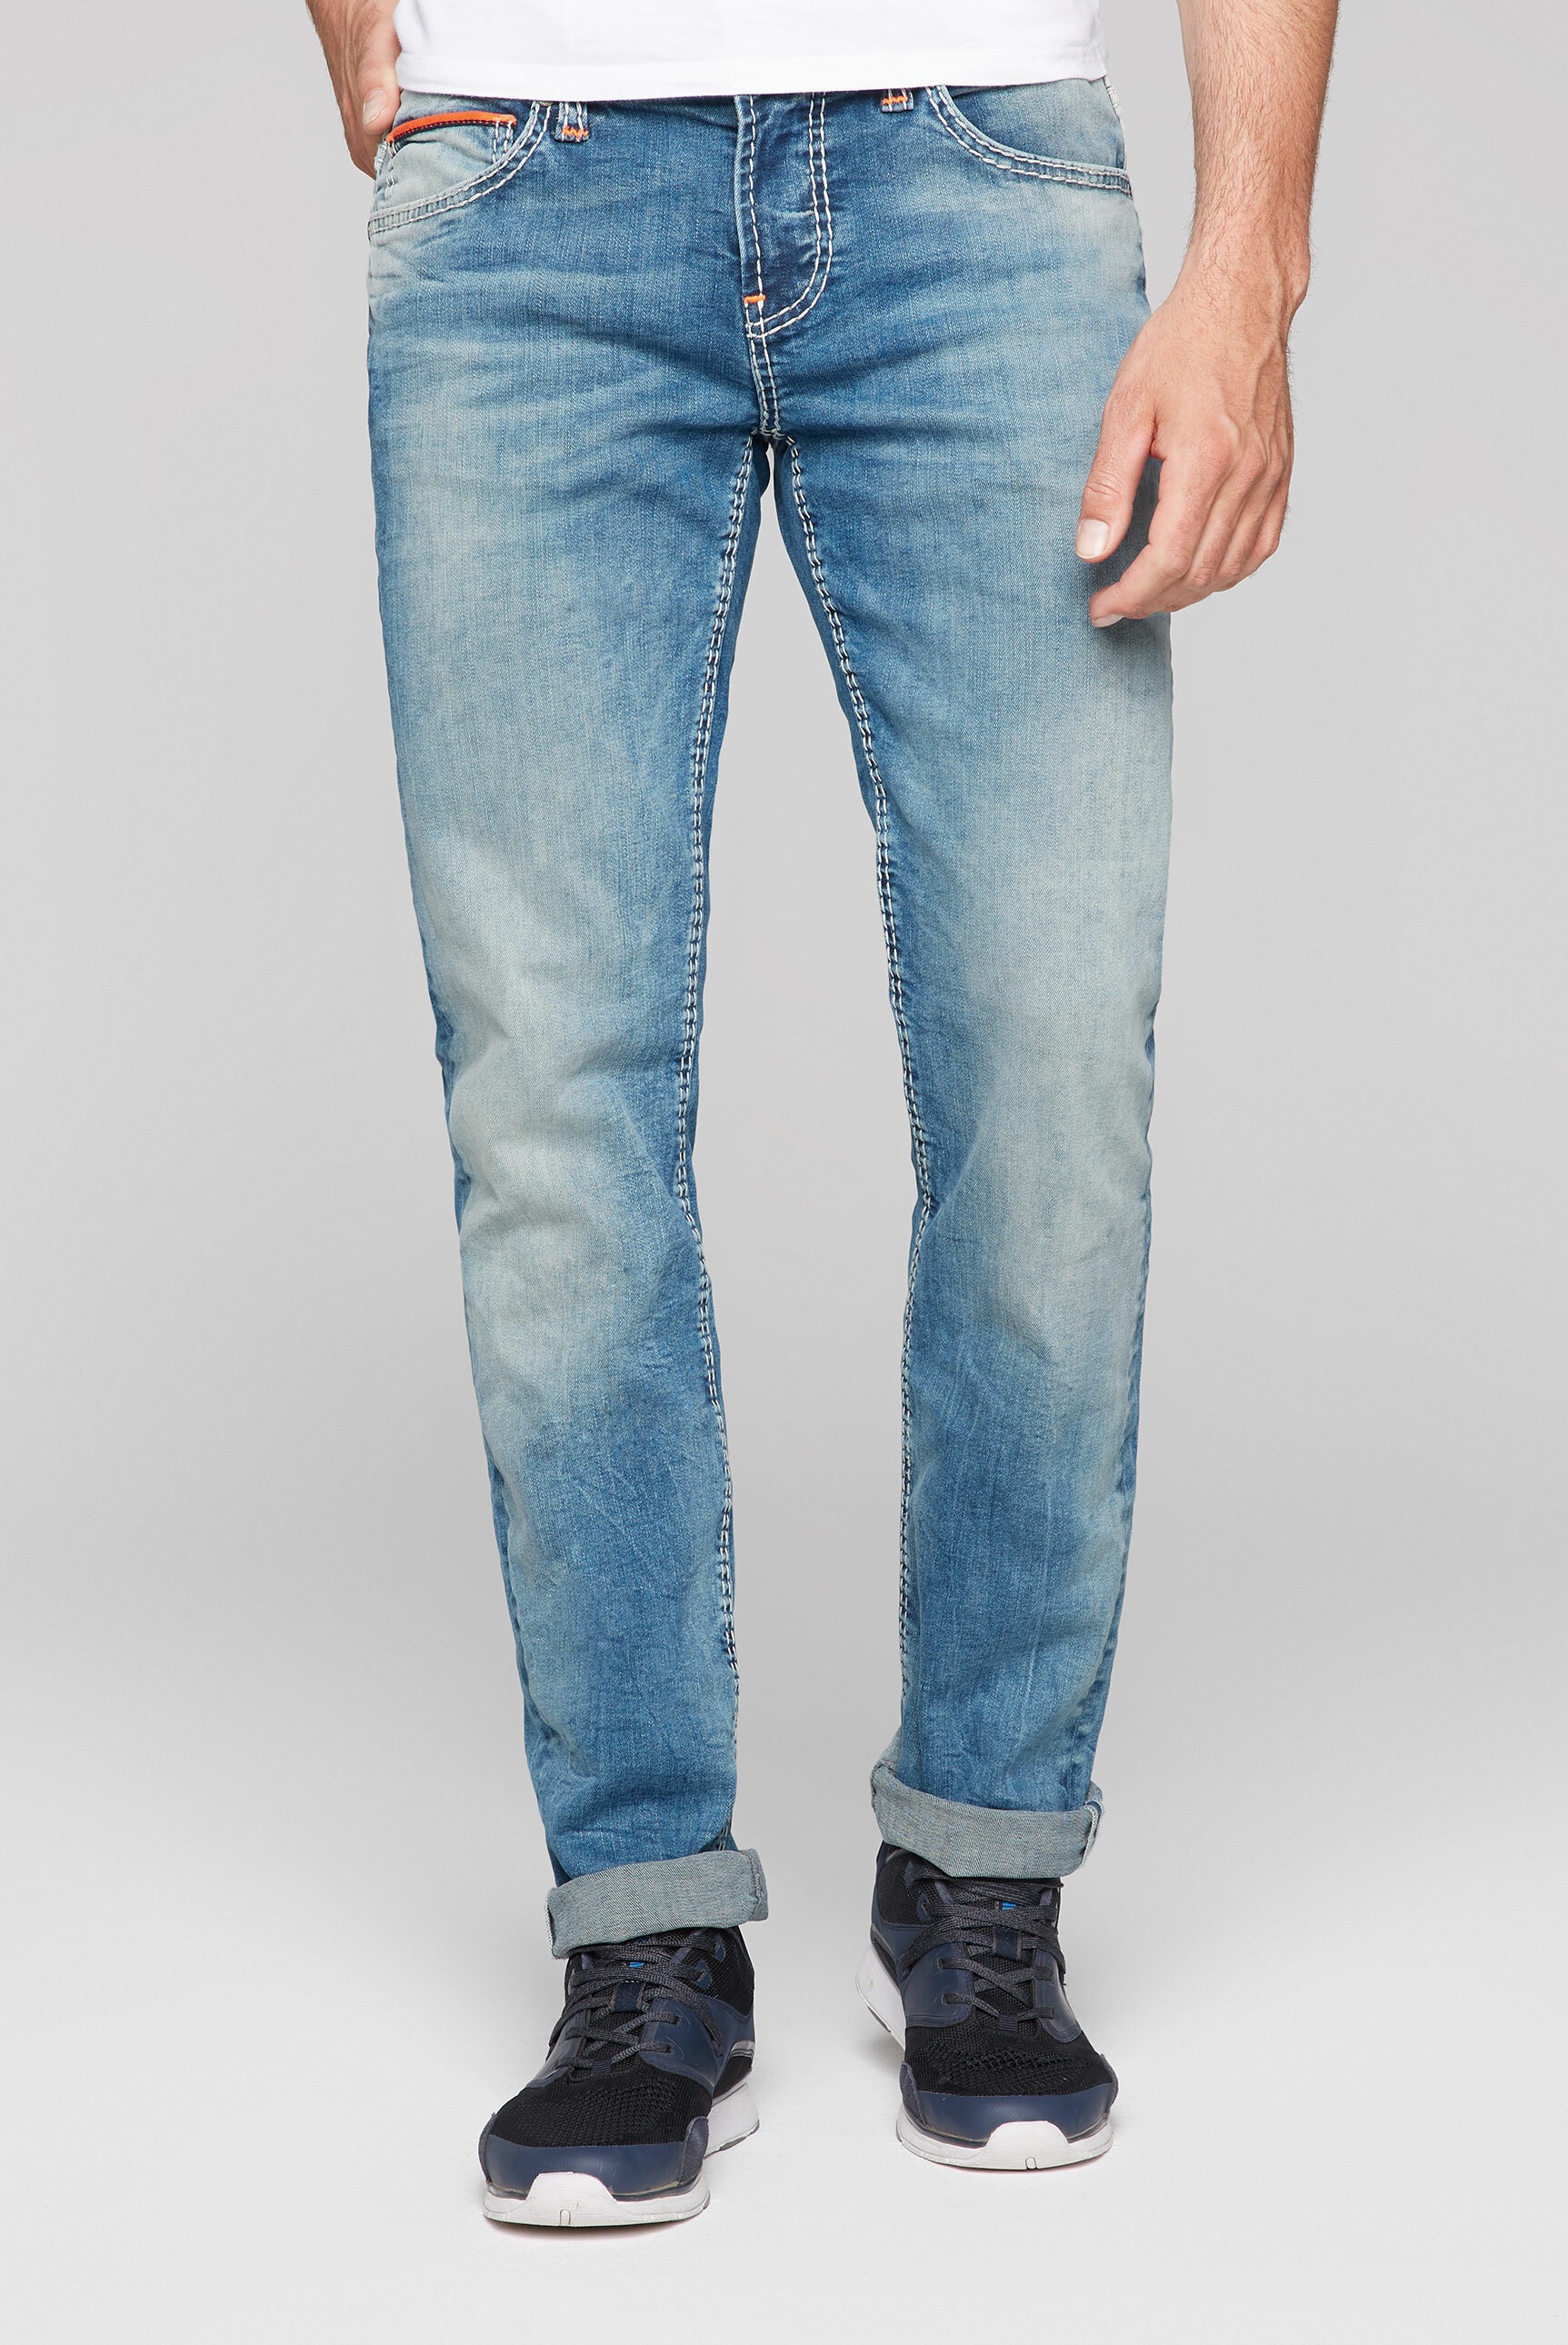 niedriger Leibhöhe kaufen mit Regular-fit-Jeans, CAMP DAVID